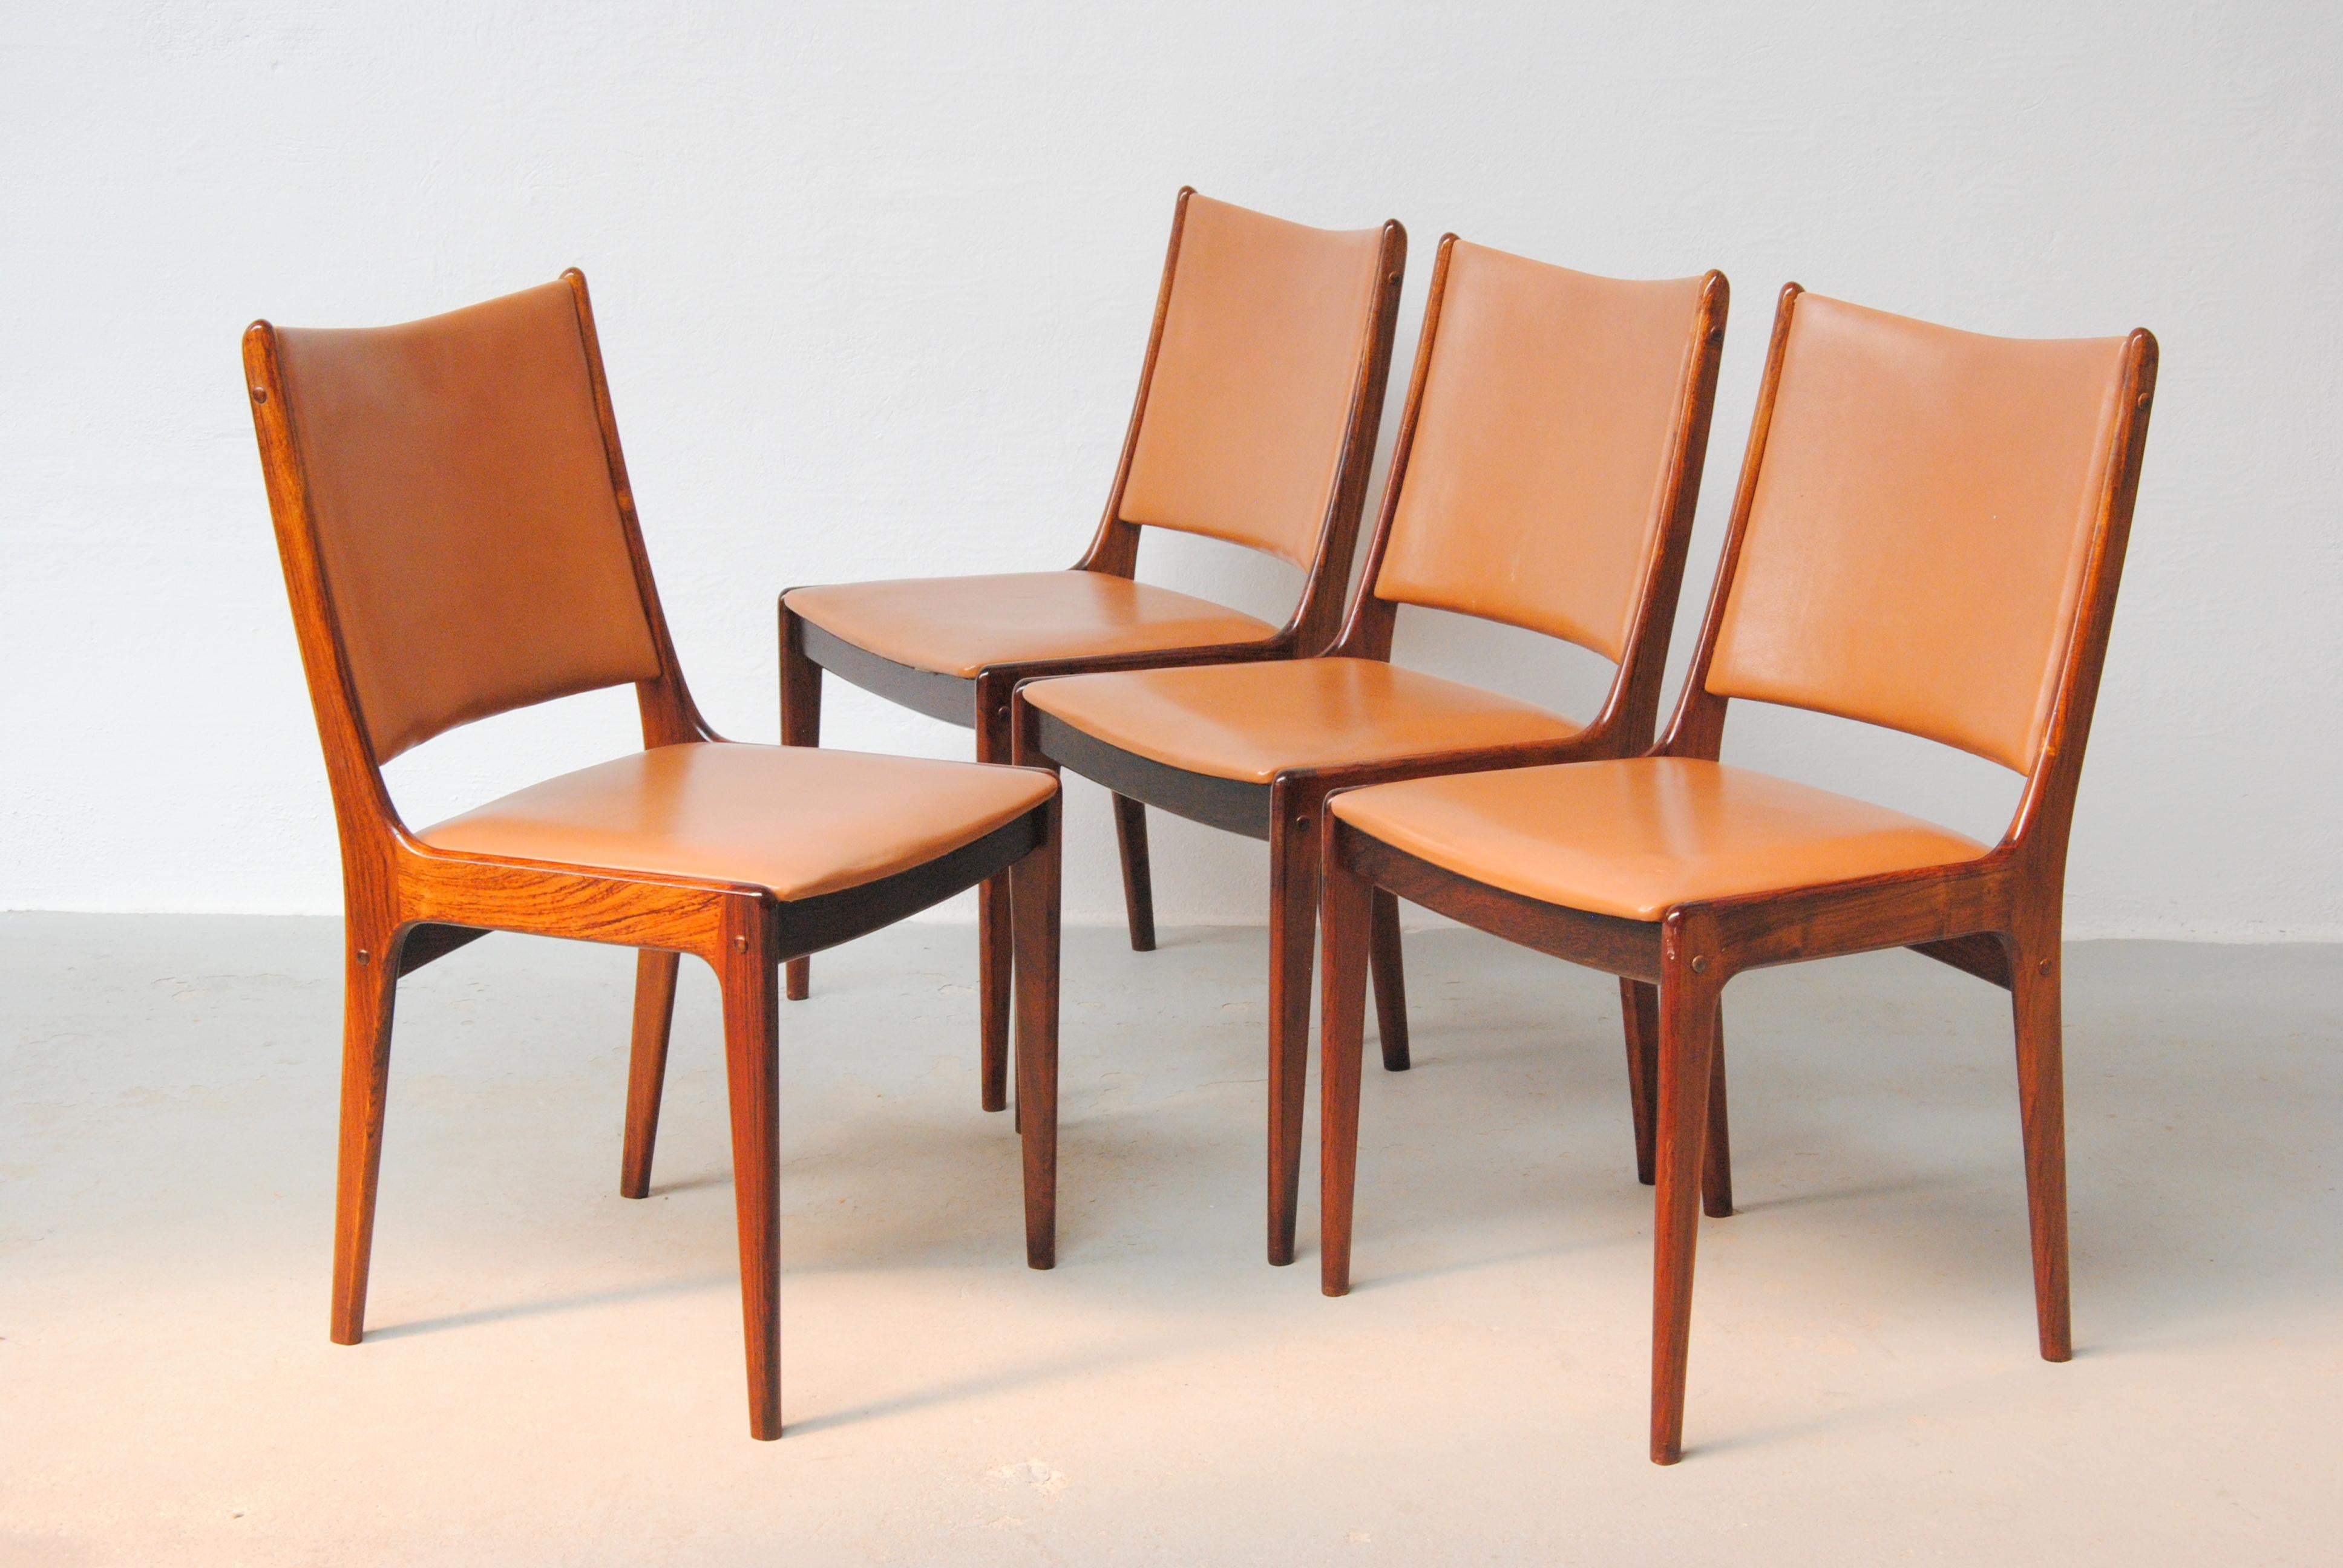 Ensemble de douze chaises de salle à manger Johannes Andersen des années 1960 en bois de rose, entièrement restaurées, fabriquées par Uldum Møbler, Danemark.

L'ensemble de chaises de salle à manger présente un design simple et élégant qui